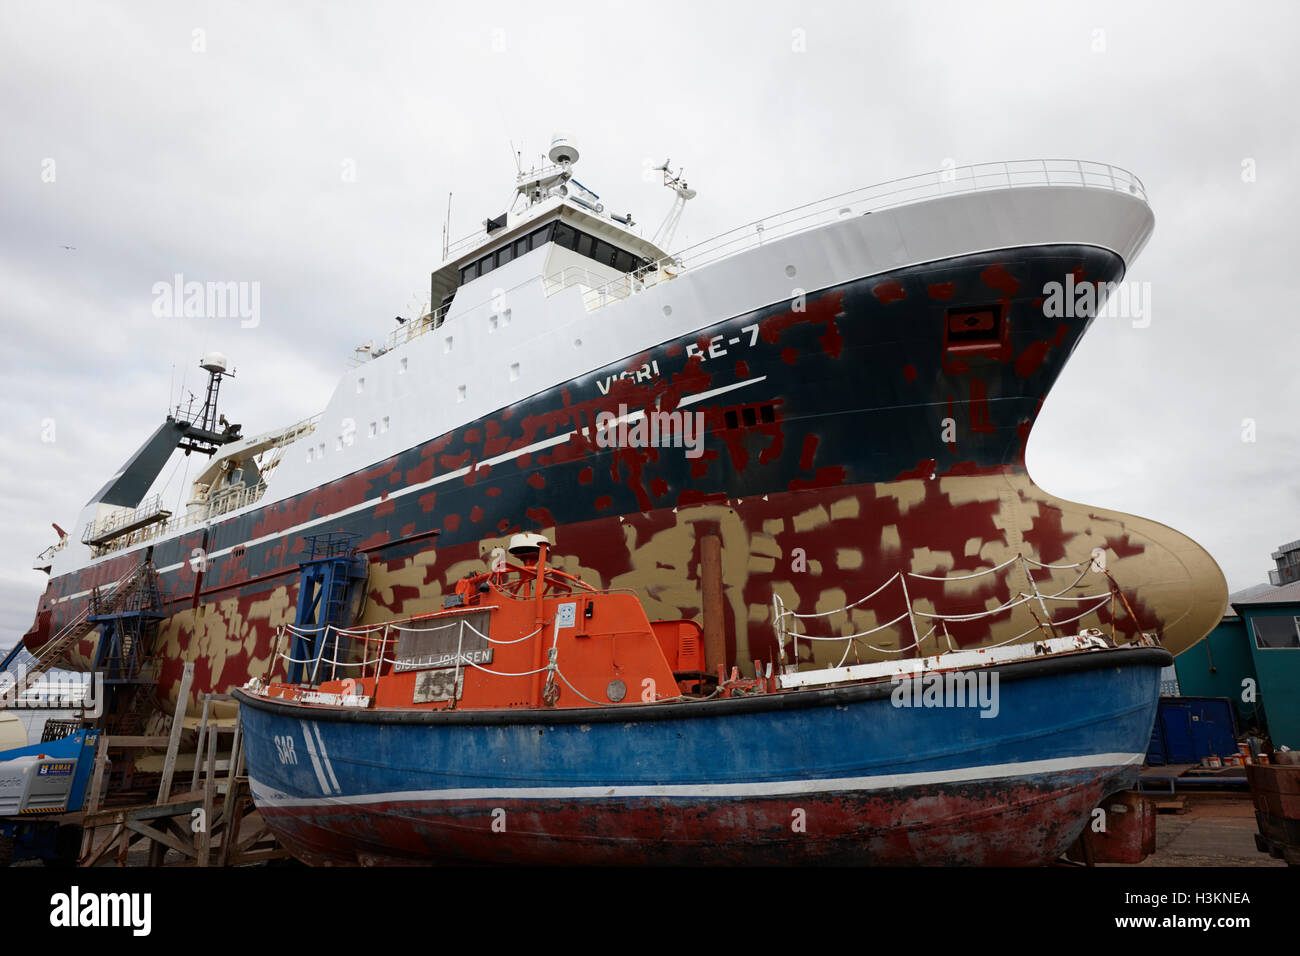 Isländische Gefrierschrank Fabrik Fischerei Trawler Vigri Re-71 unterziehen, Malerarbeiten im Trockendock reykjavik Stockfoto